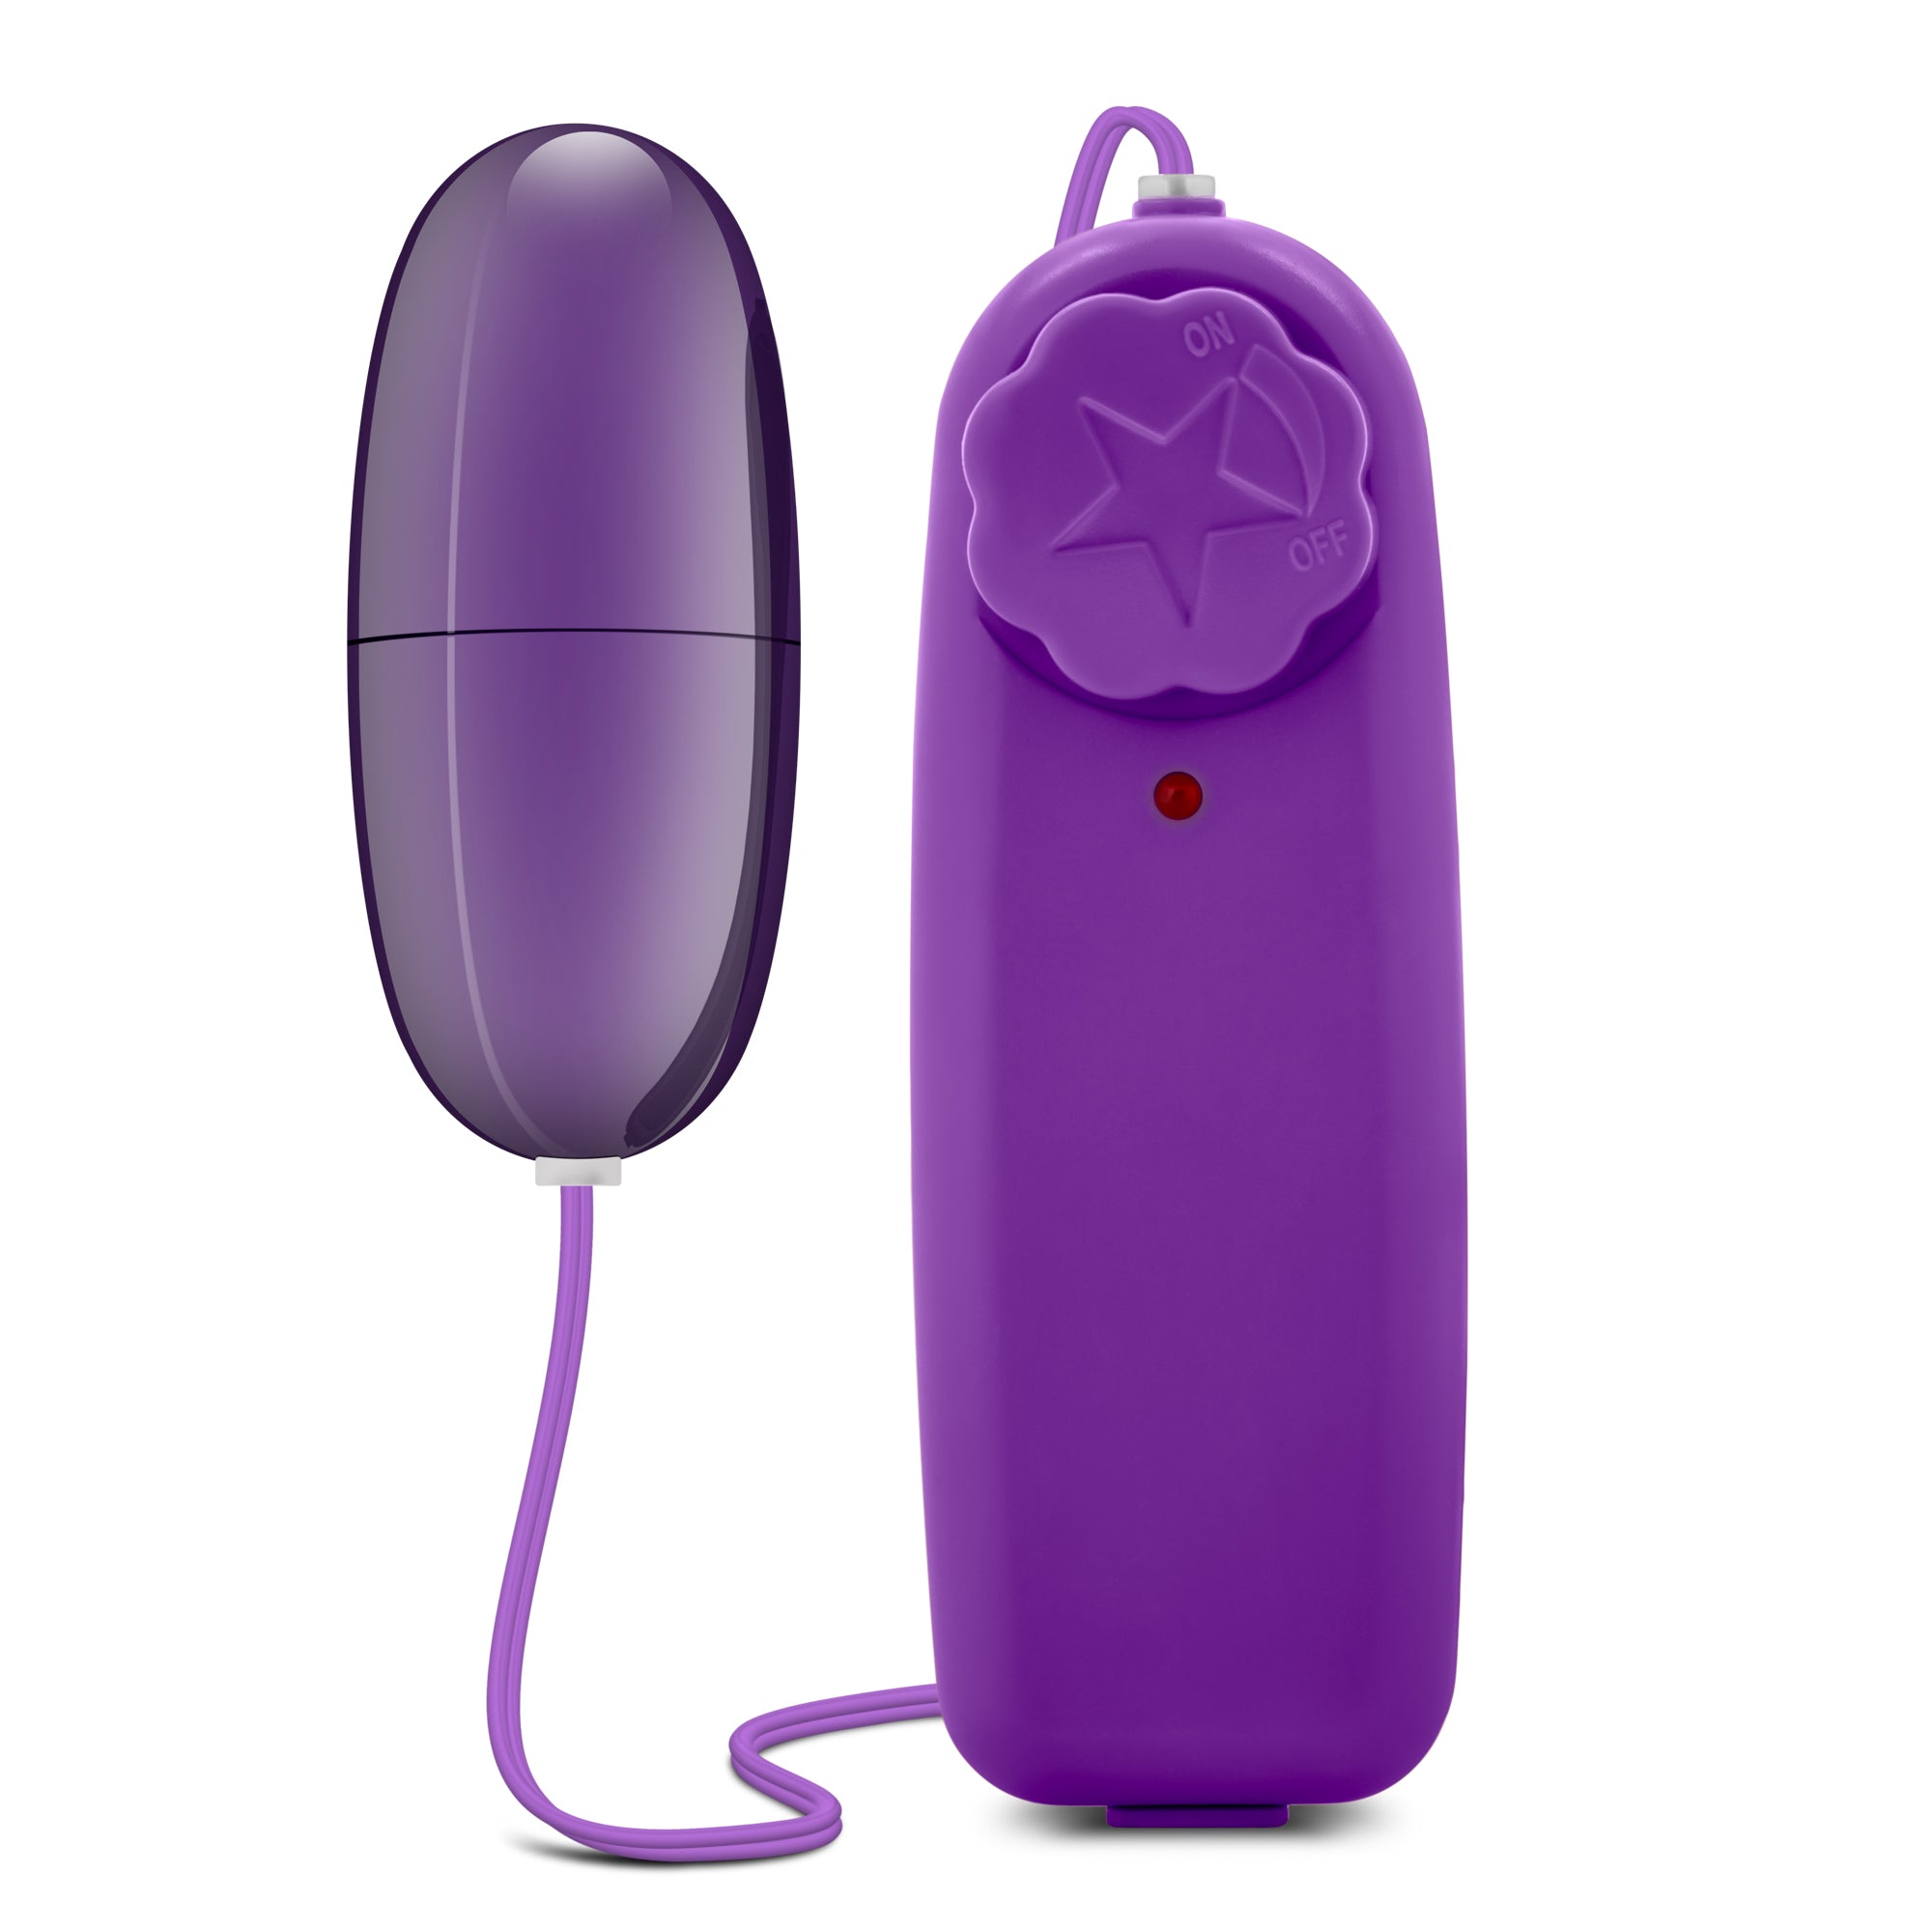 Vibrant Playtime Delight: Power Bullet Vibrator Purple